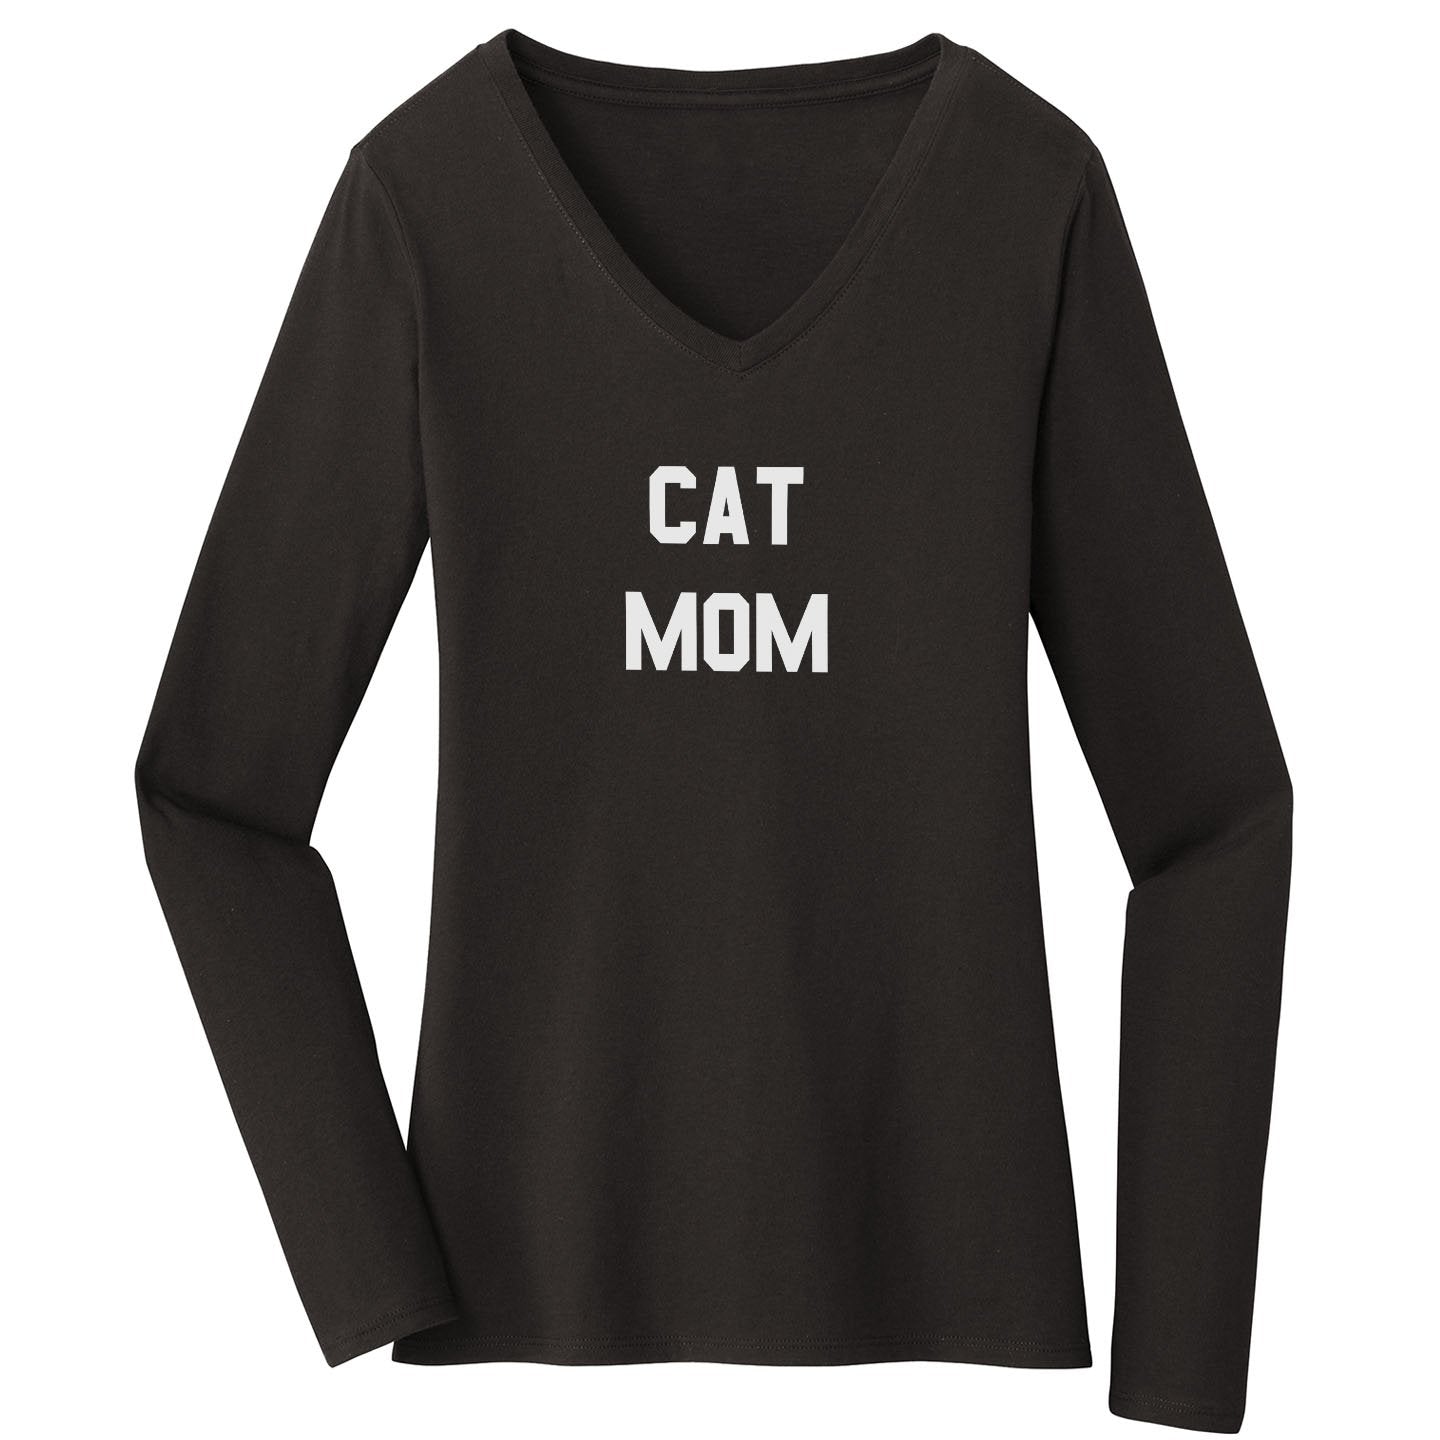 Cat Mom - Women's V-Neck Long Sleeve T-Shirt